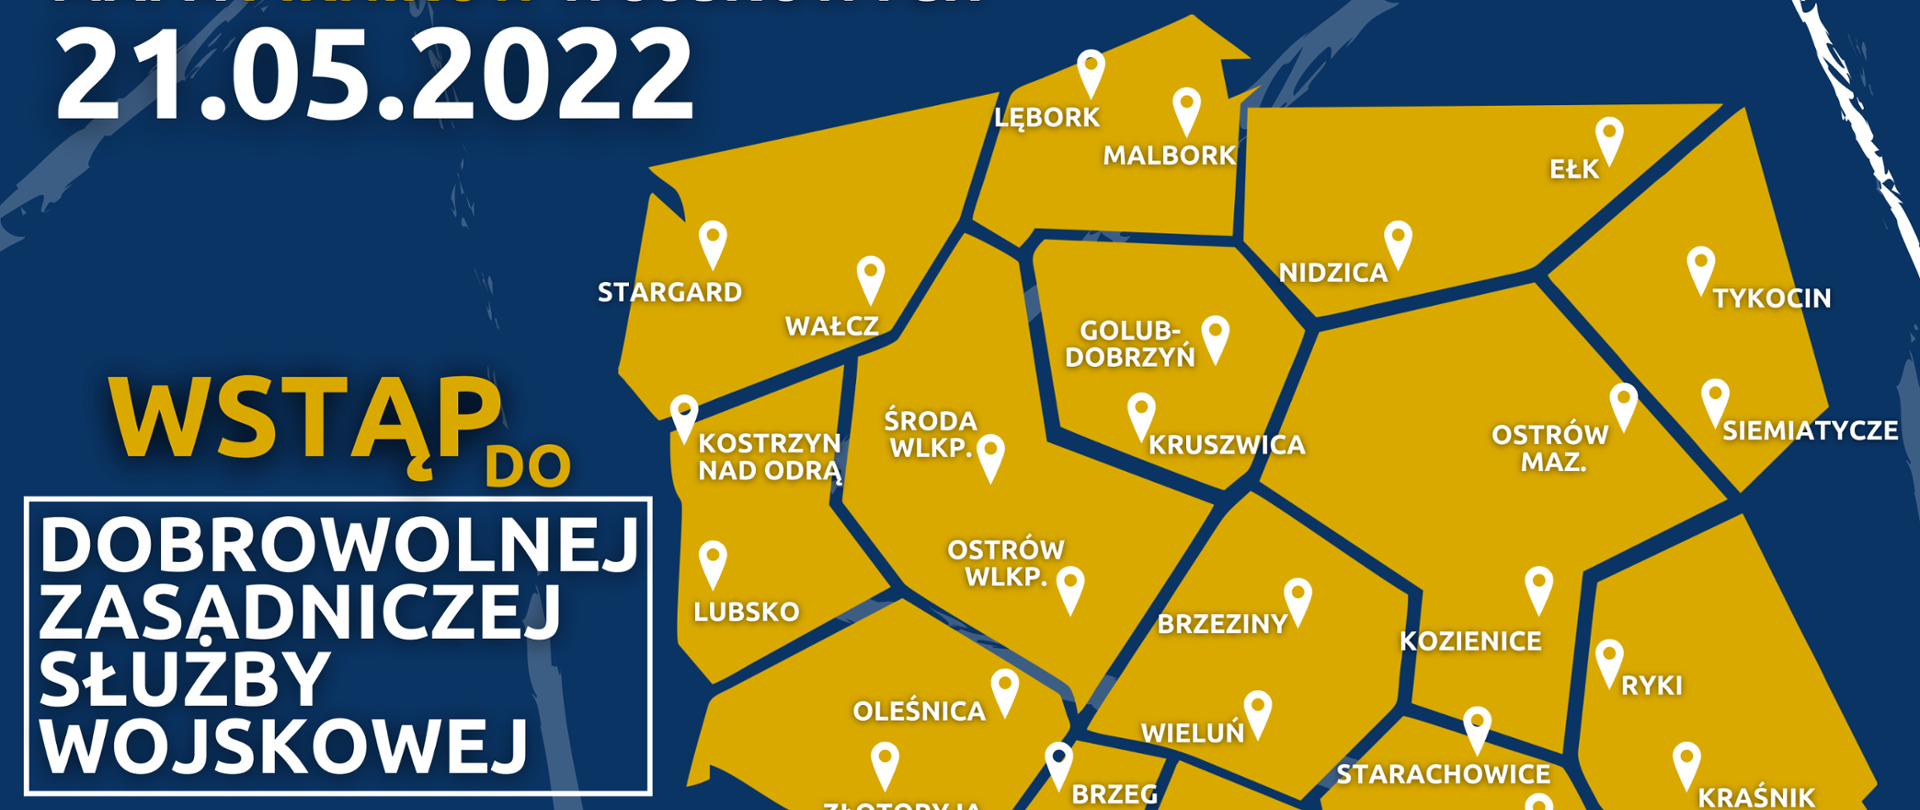 Kontur mapy Polski, na której zaznaczone są miejsca, w których odbędą się Pikniki Wojskowe dnia 21 maja tego roku